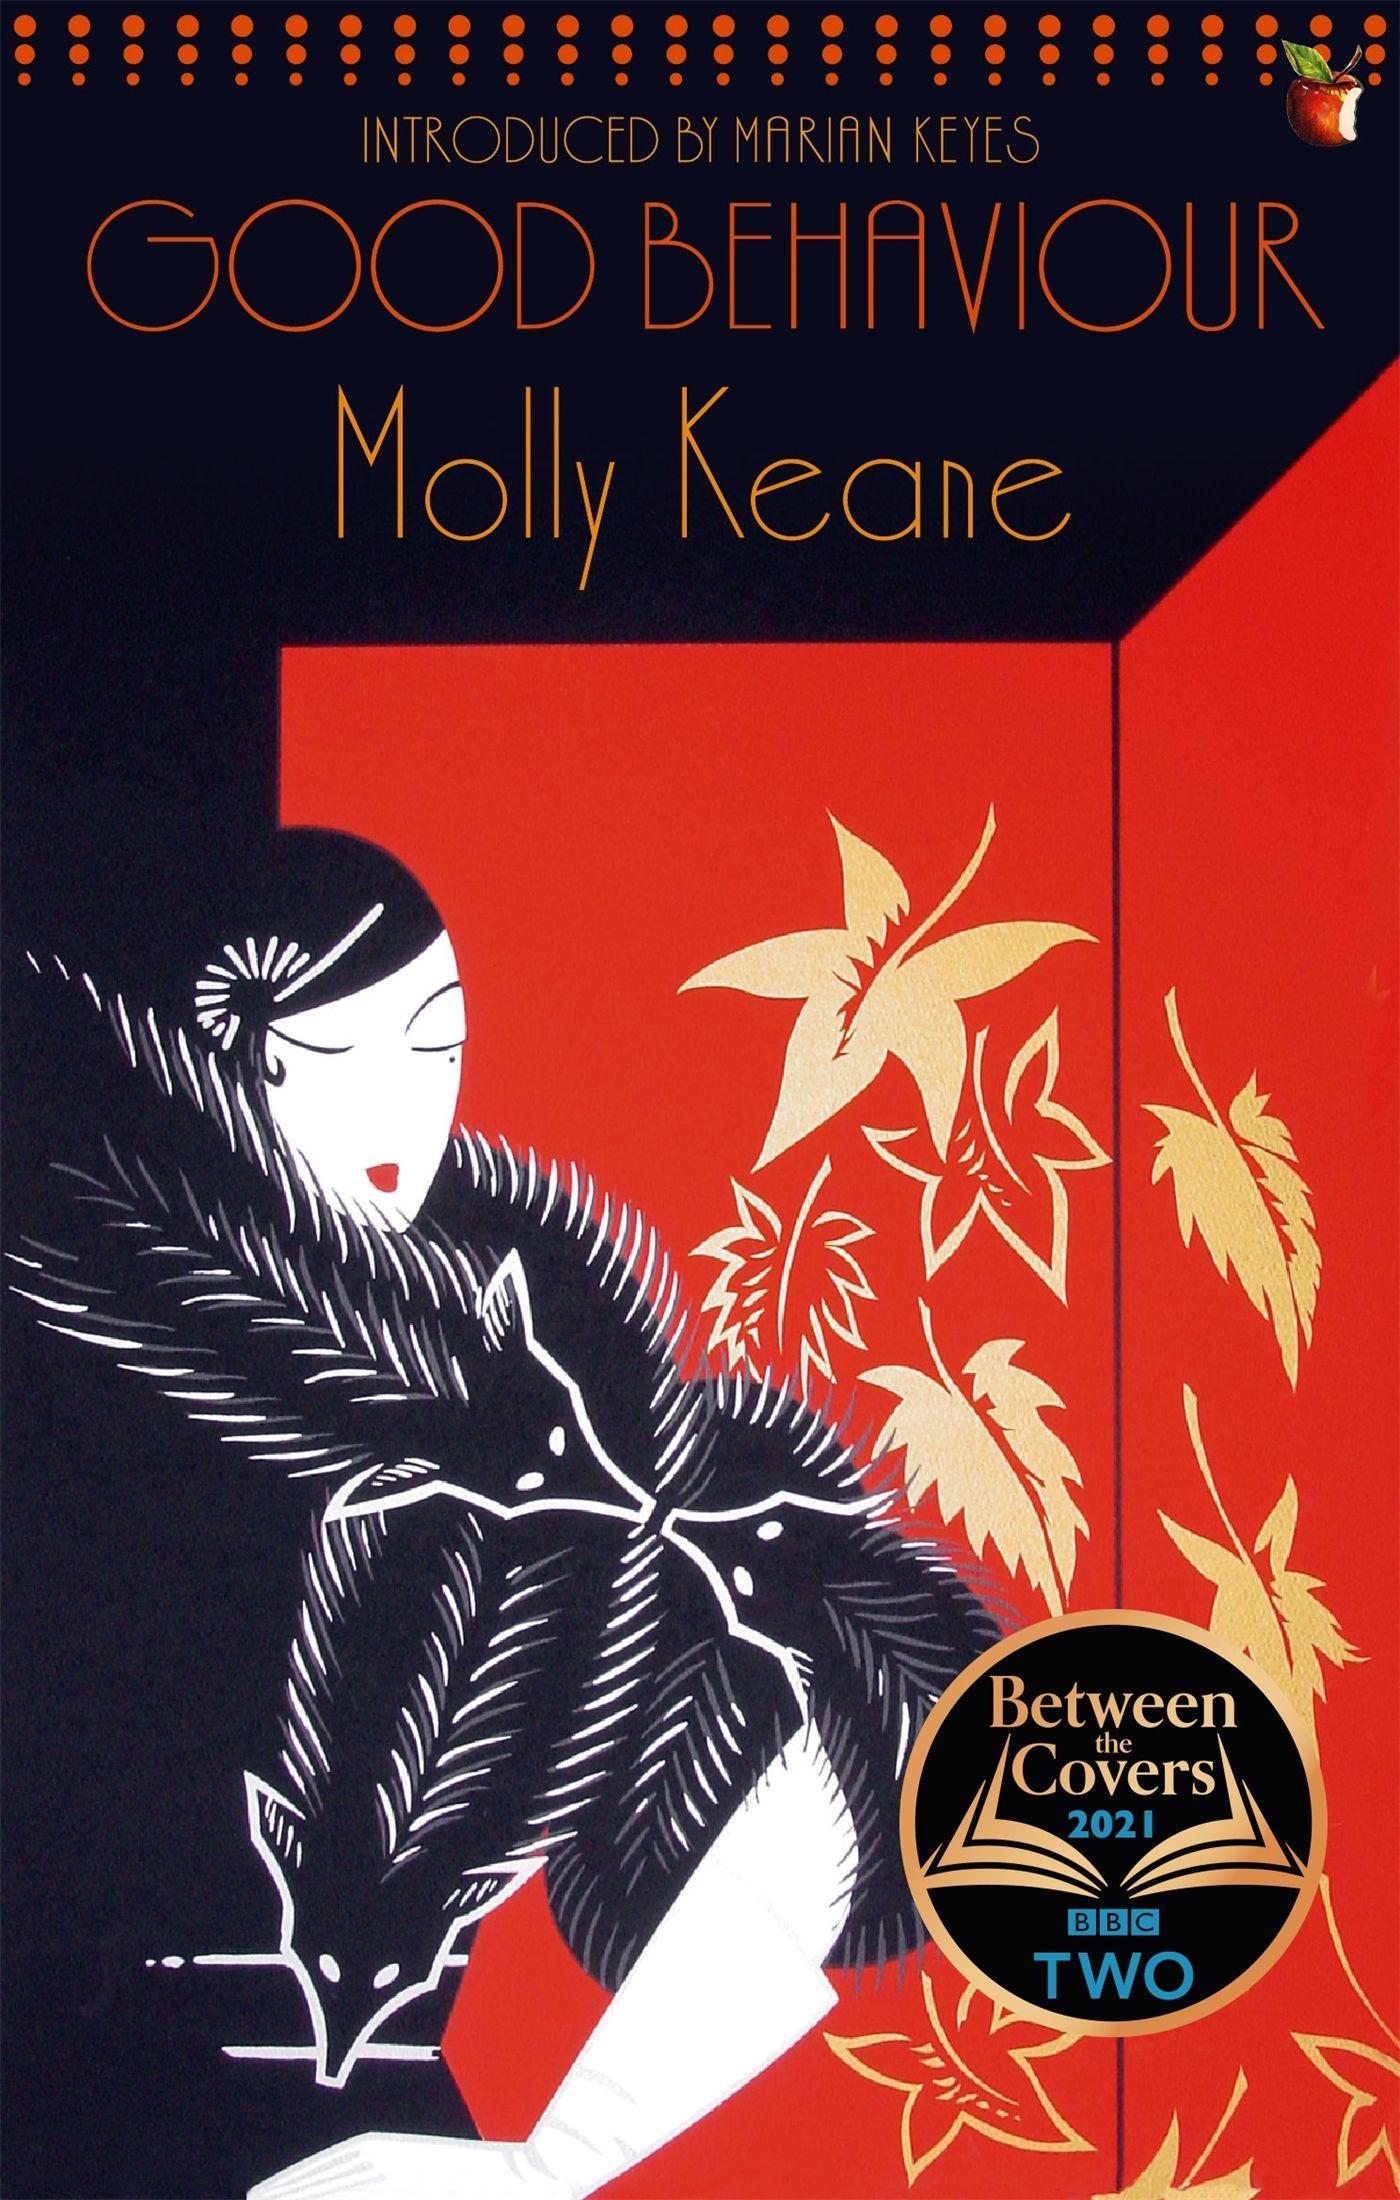 Good Behaviour / A BBC 2 Between the Covers Book Club Pick - Booker Prize Gems / Molly Keane / Taschenbuch / Kartoniert / Broschiert / Englisch / 2005 / Little, Brown Book Group / EAN 9781844083244 - Keane, Molly